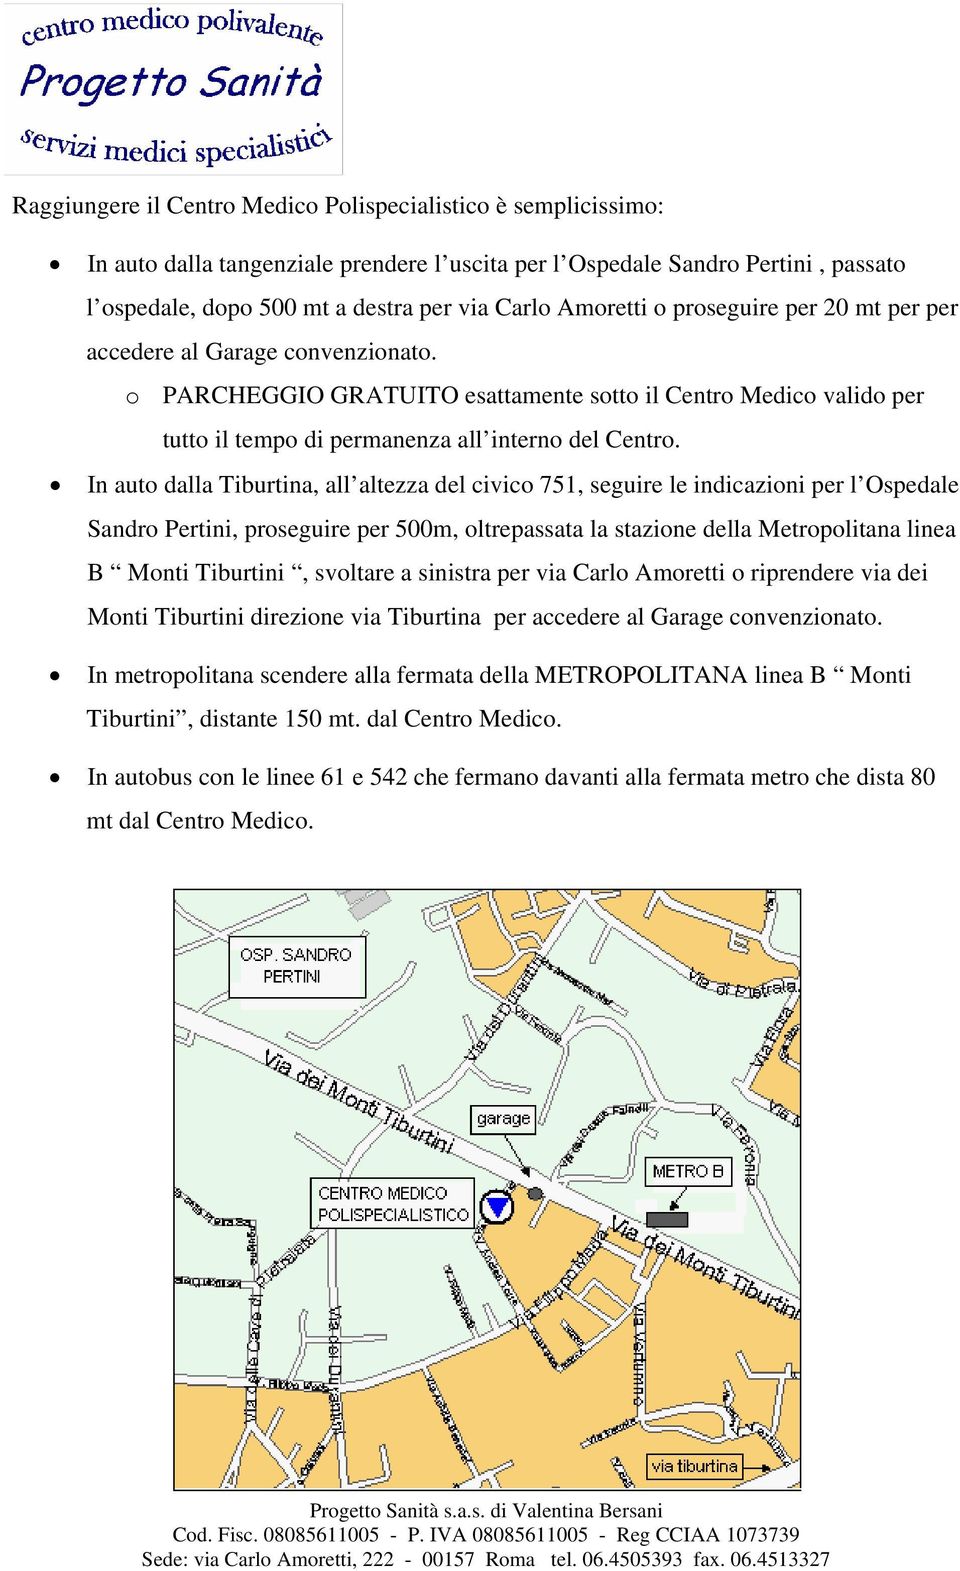 In auto dalla Tiburtina, all altezza del civico 751, seguire le indicazioni per l Ospedale Sandro Pertini, proseguire per 500m, oltrepassata la stazione della Metropolitana linea B Monti Tiburtini,